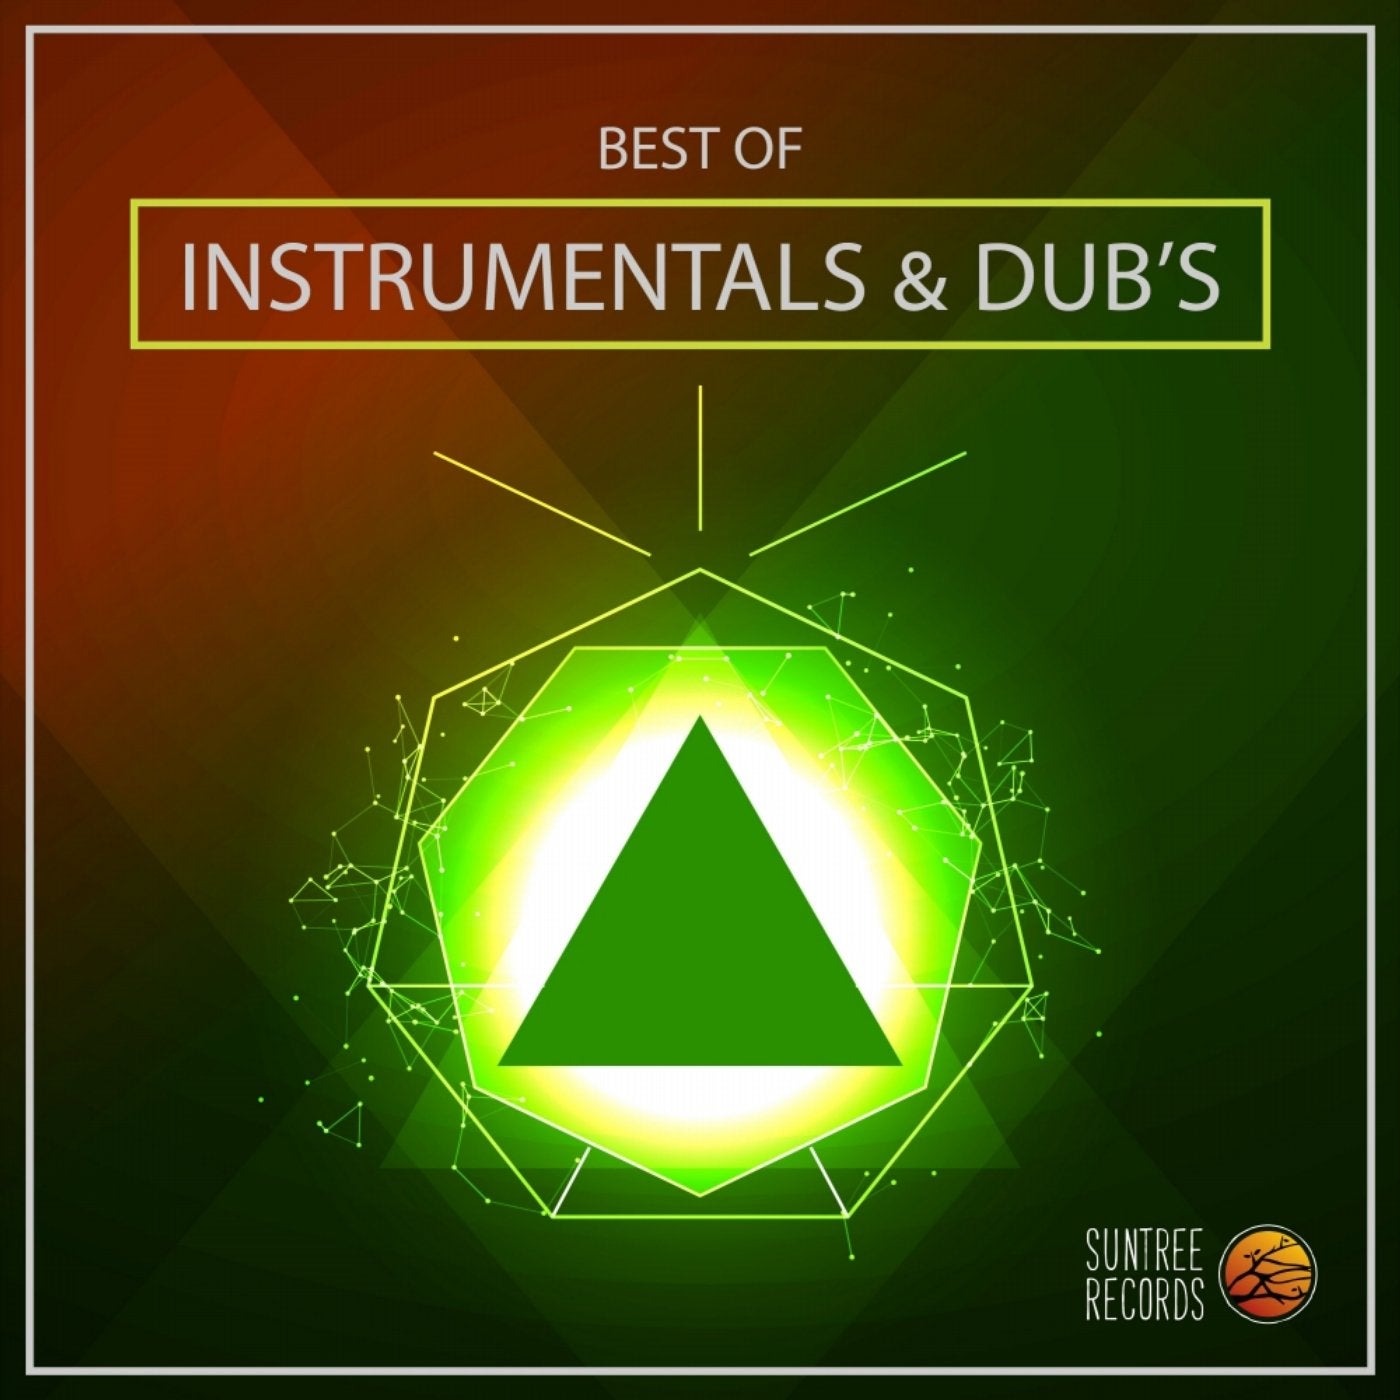 Best of Instrumentals & Dub's